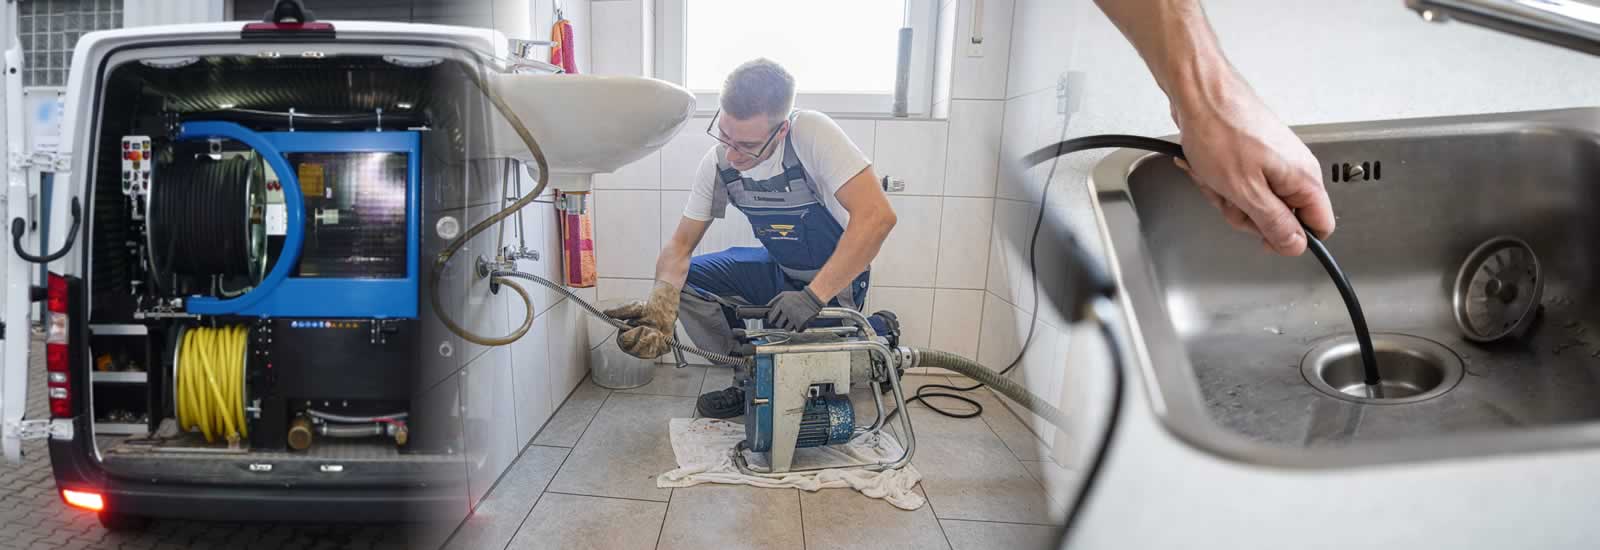 Débouchage WC professionnel - Déboucheur Toilette en Haute Savoie